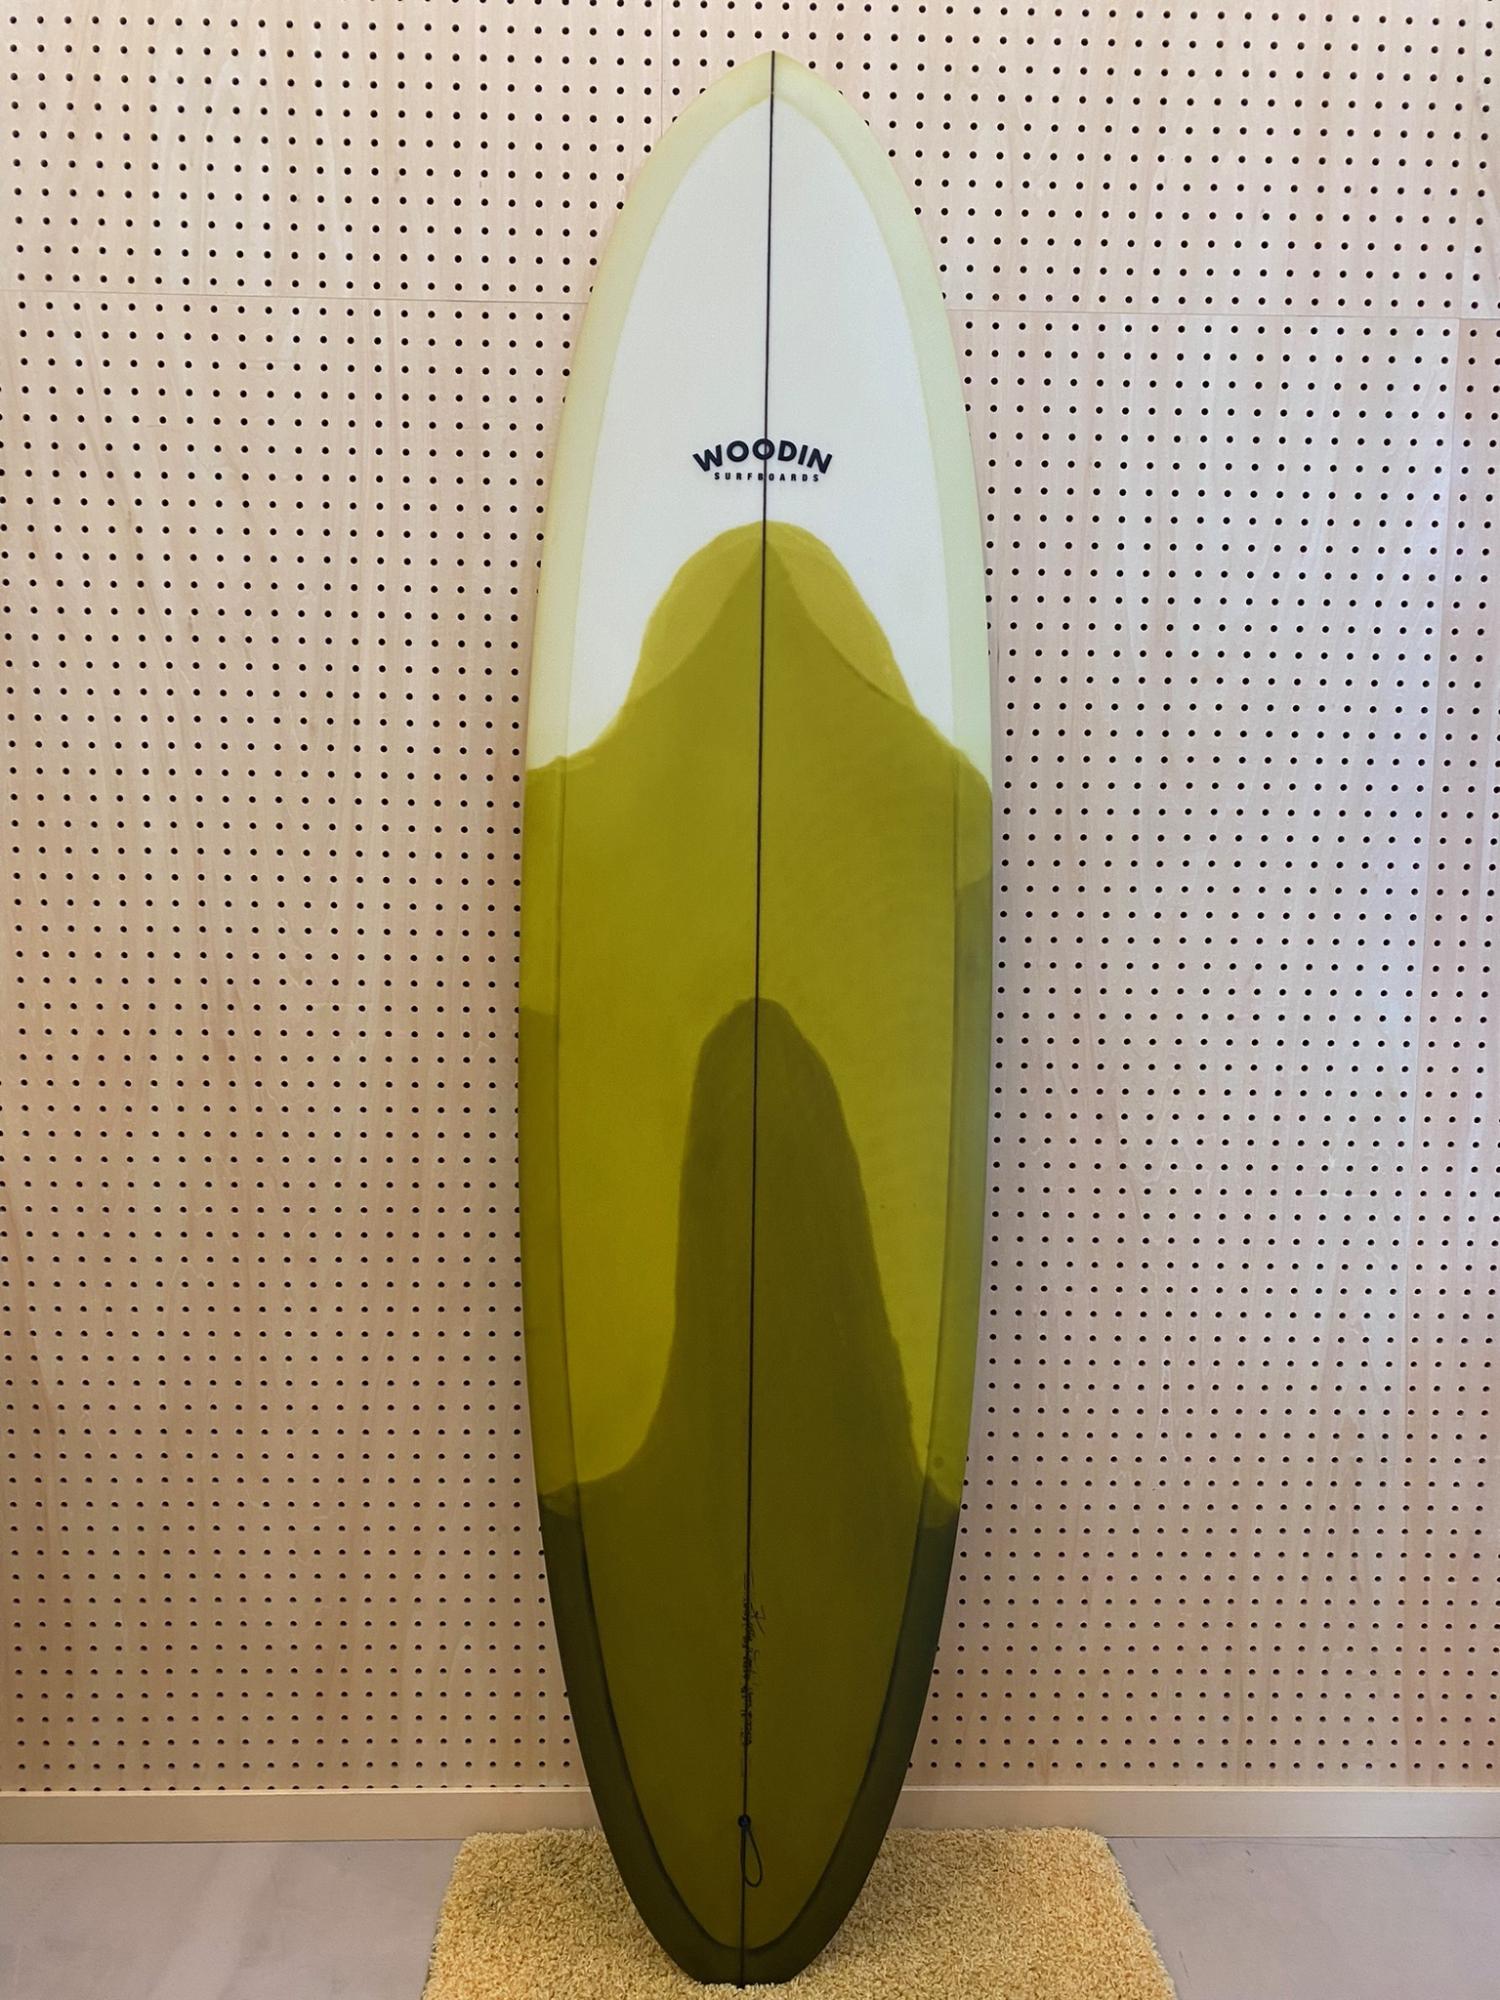 Gypsy Eye model 6.10 WOODIN SURFBOARDS